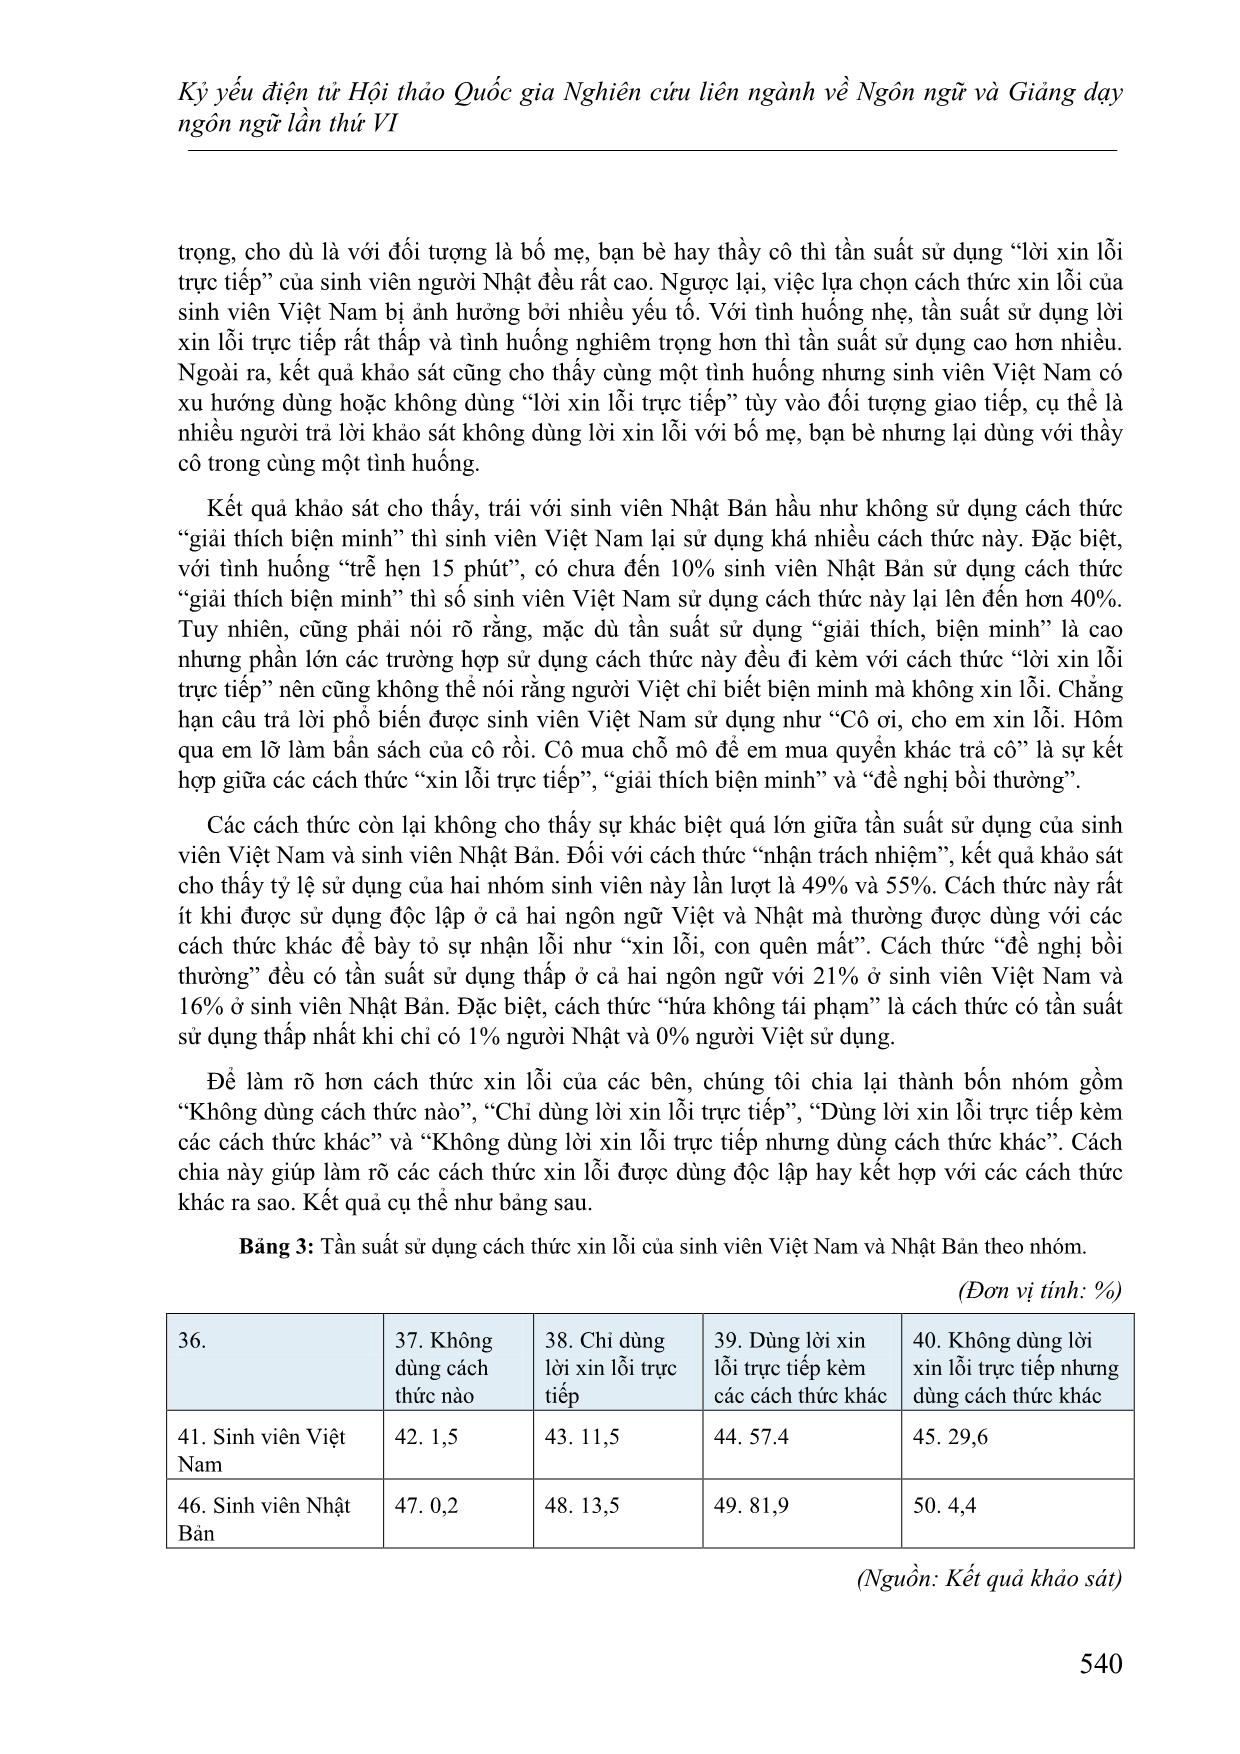 Các cách thức xin lỗi trong tiếng Việt và tiếng Nhật - Đối chiếu dựa trên lý thuyết lịch sự của Brown và Levinson trang 8